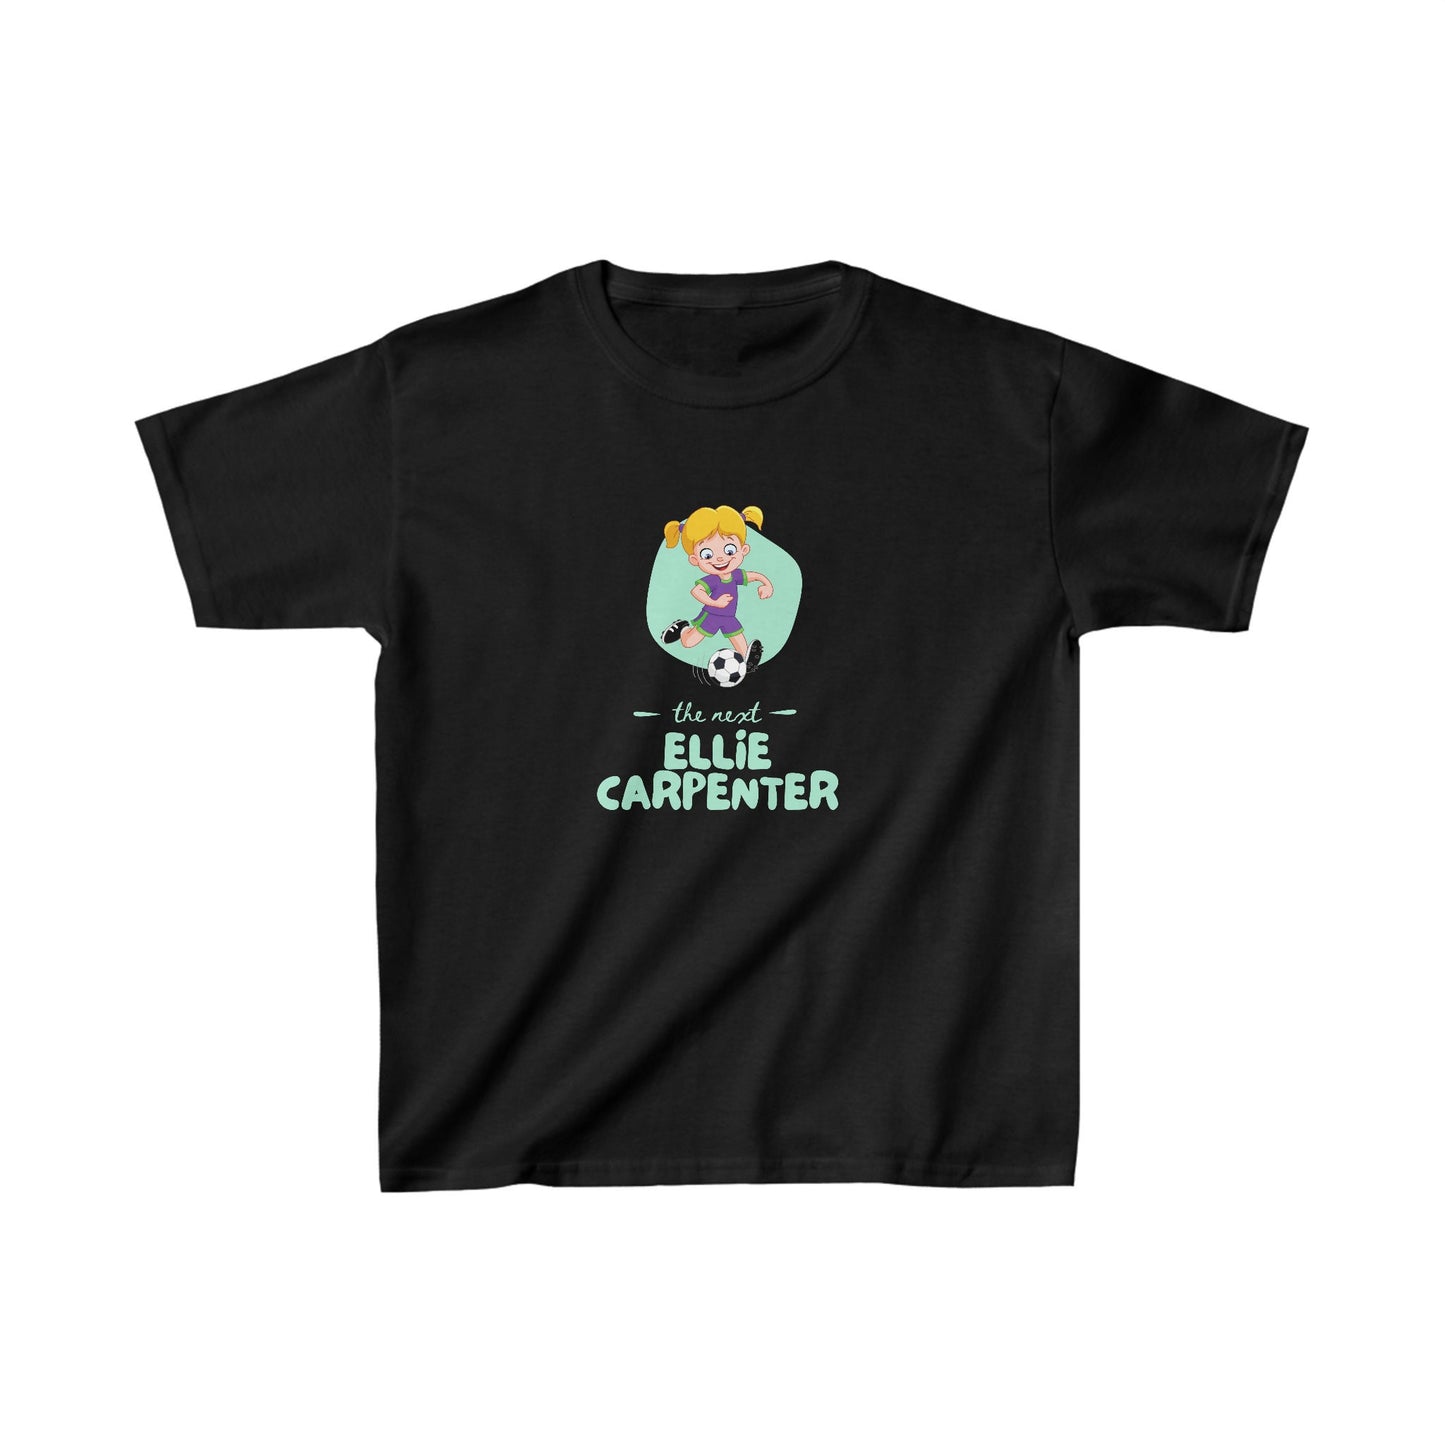 Ellie Carpenter Kids T-Shirt, The Matilda's Goalie, The Next Ellie Carpenter T-shirt, Australian Women's World Cup Kids T-Shirt, FIFA